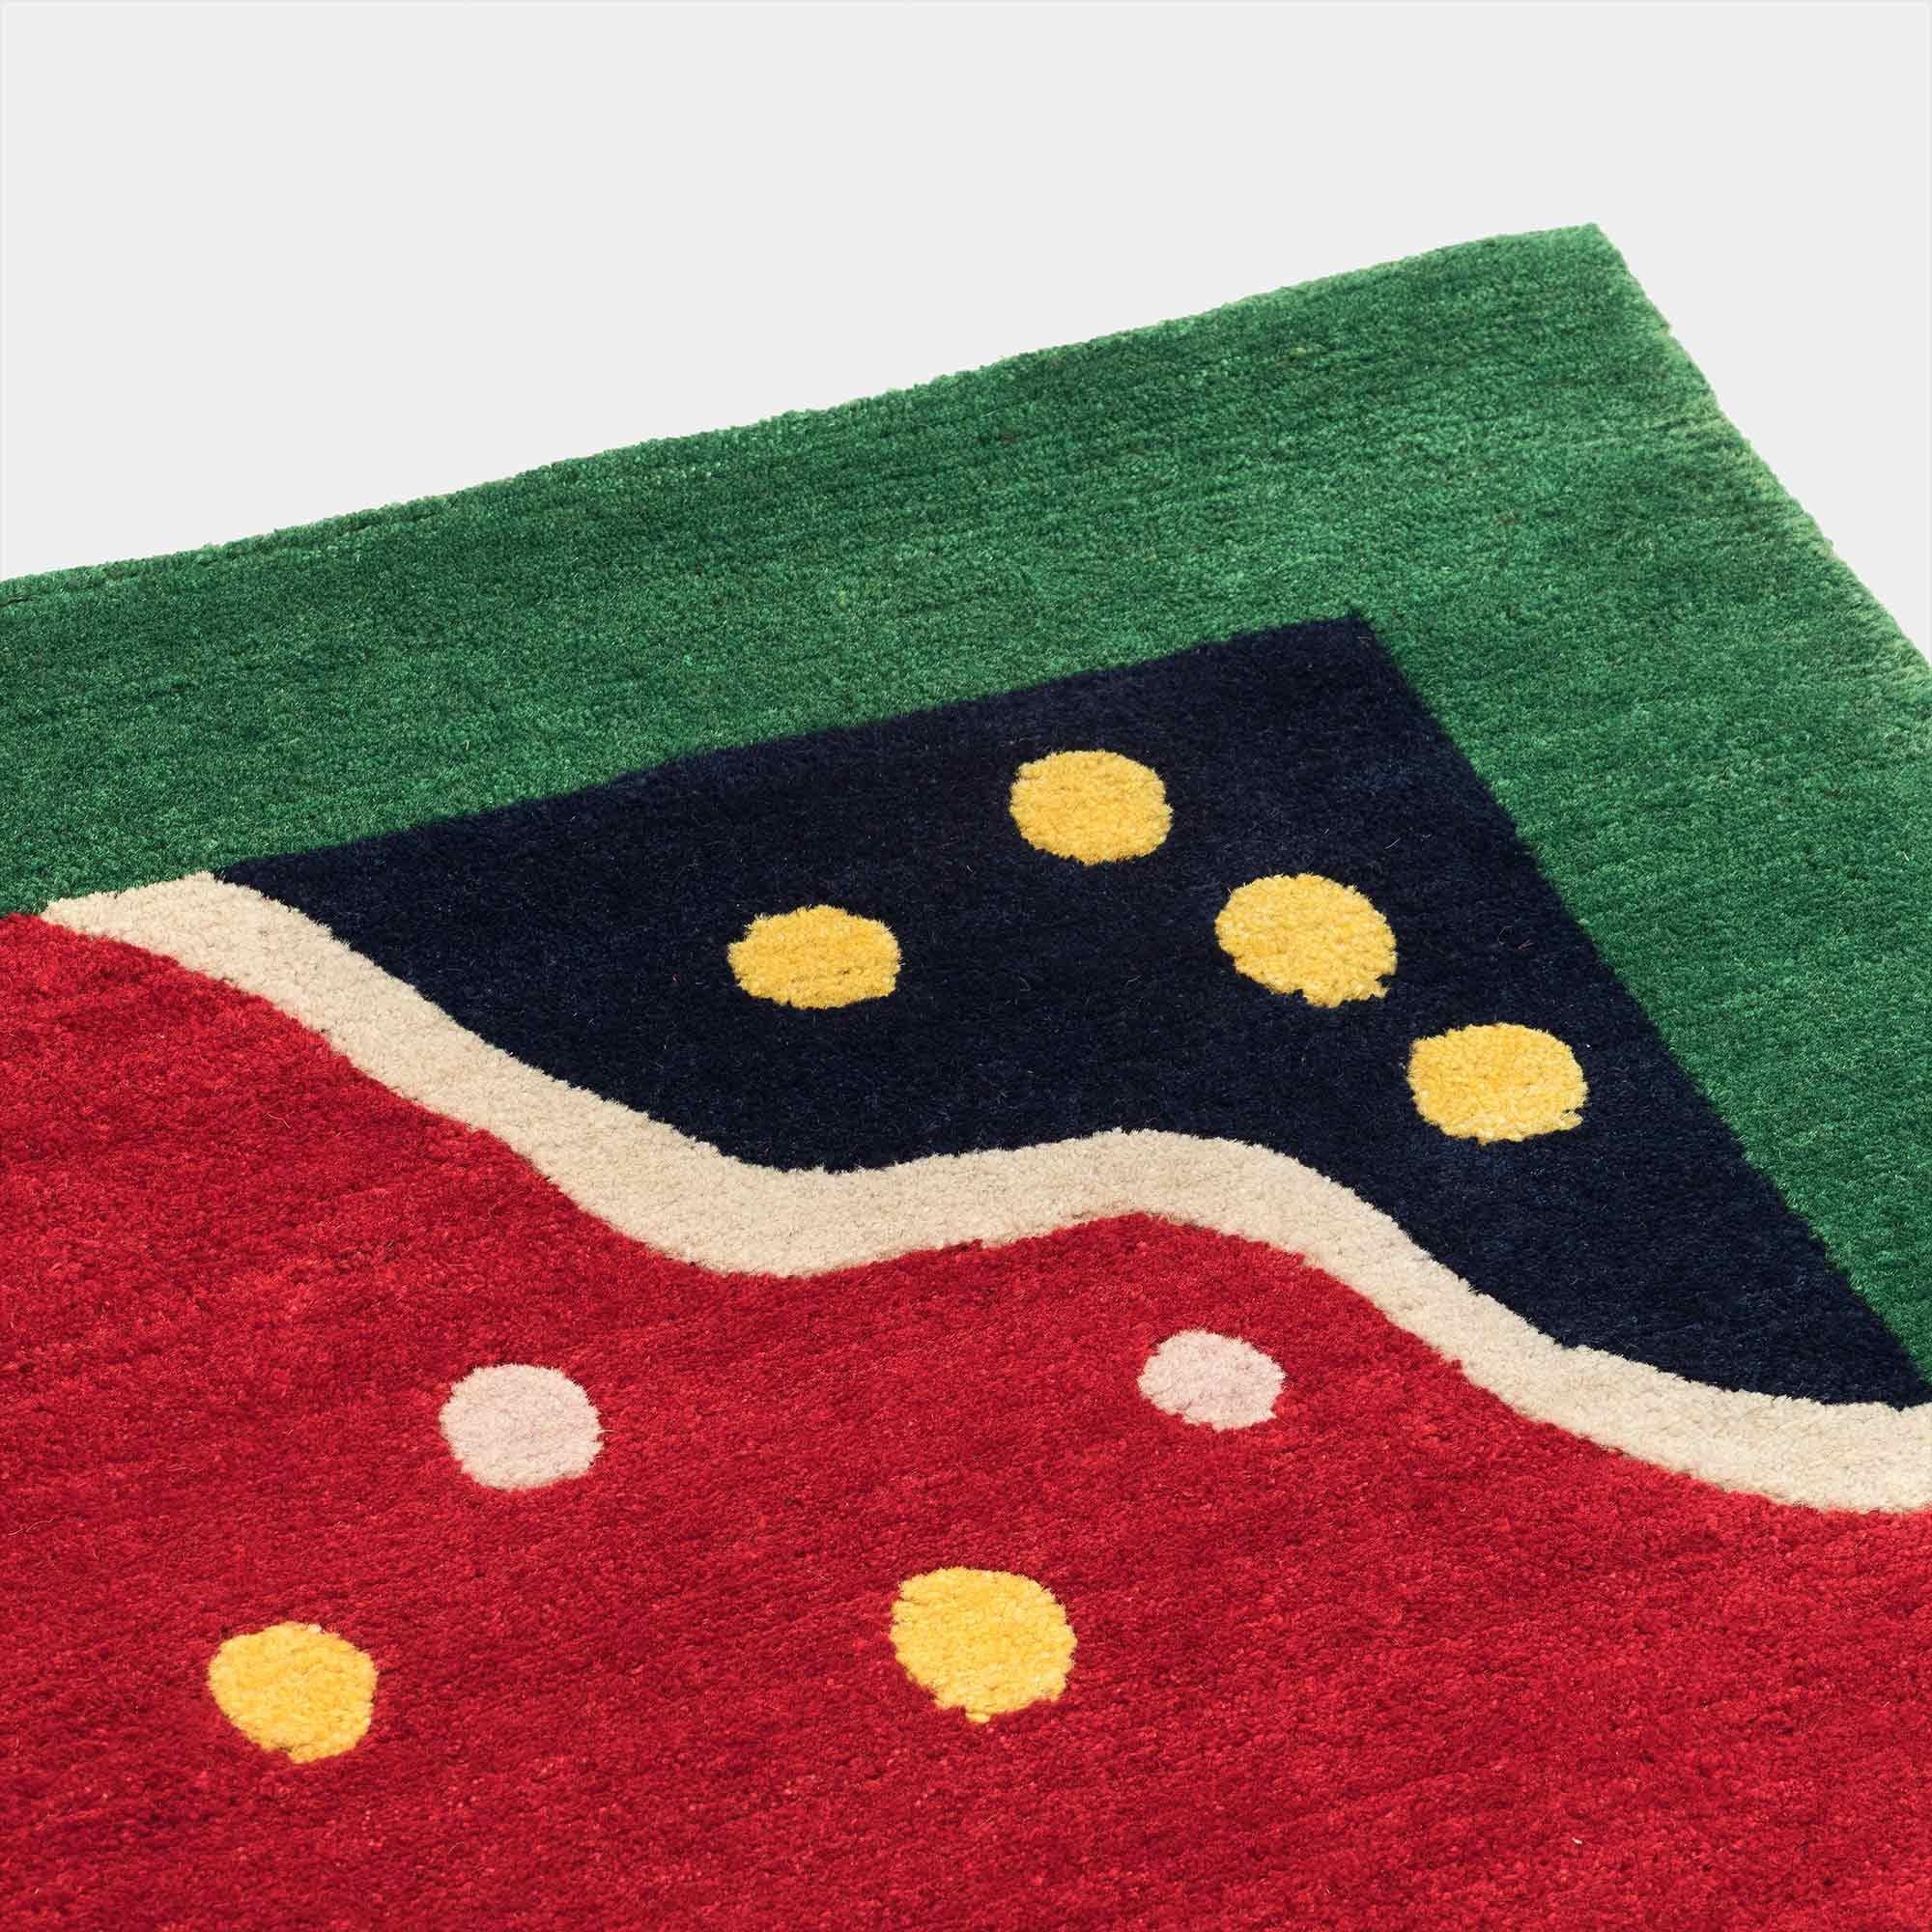 Tapis en laine d'INDE par George J. Sowden pour la collection Post Design/Memphis

Un tapis en laine fabriqué à la main par différents artisans népalais. Fabriqué dans une édition limitée de 36 exemplaires signés et numérotés.

Le tapis étant